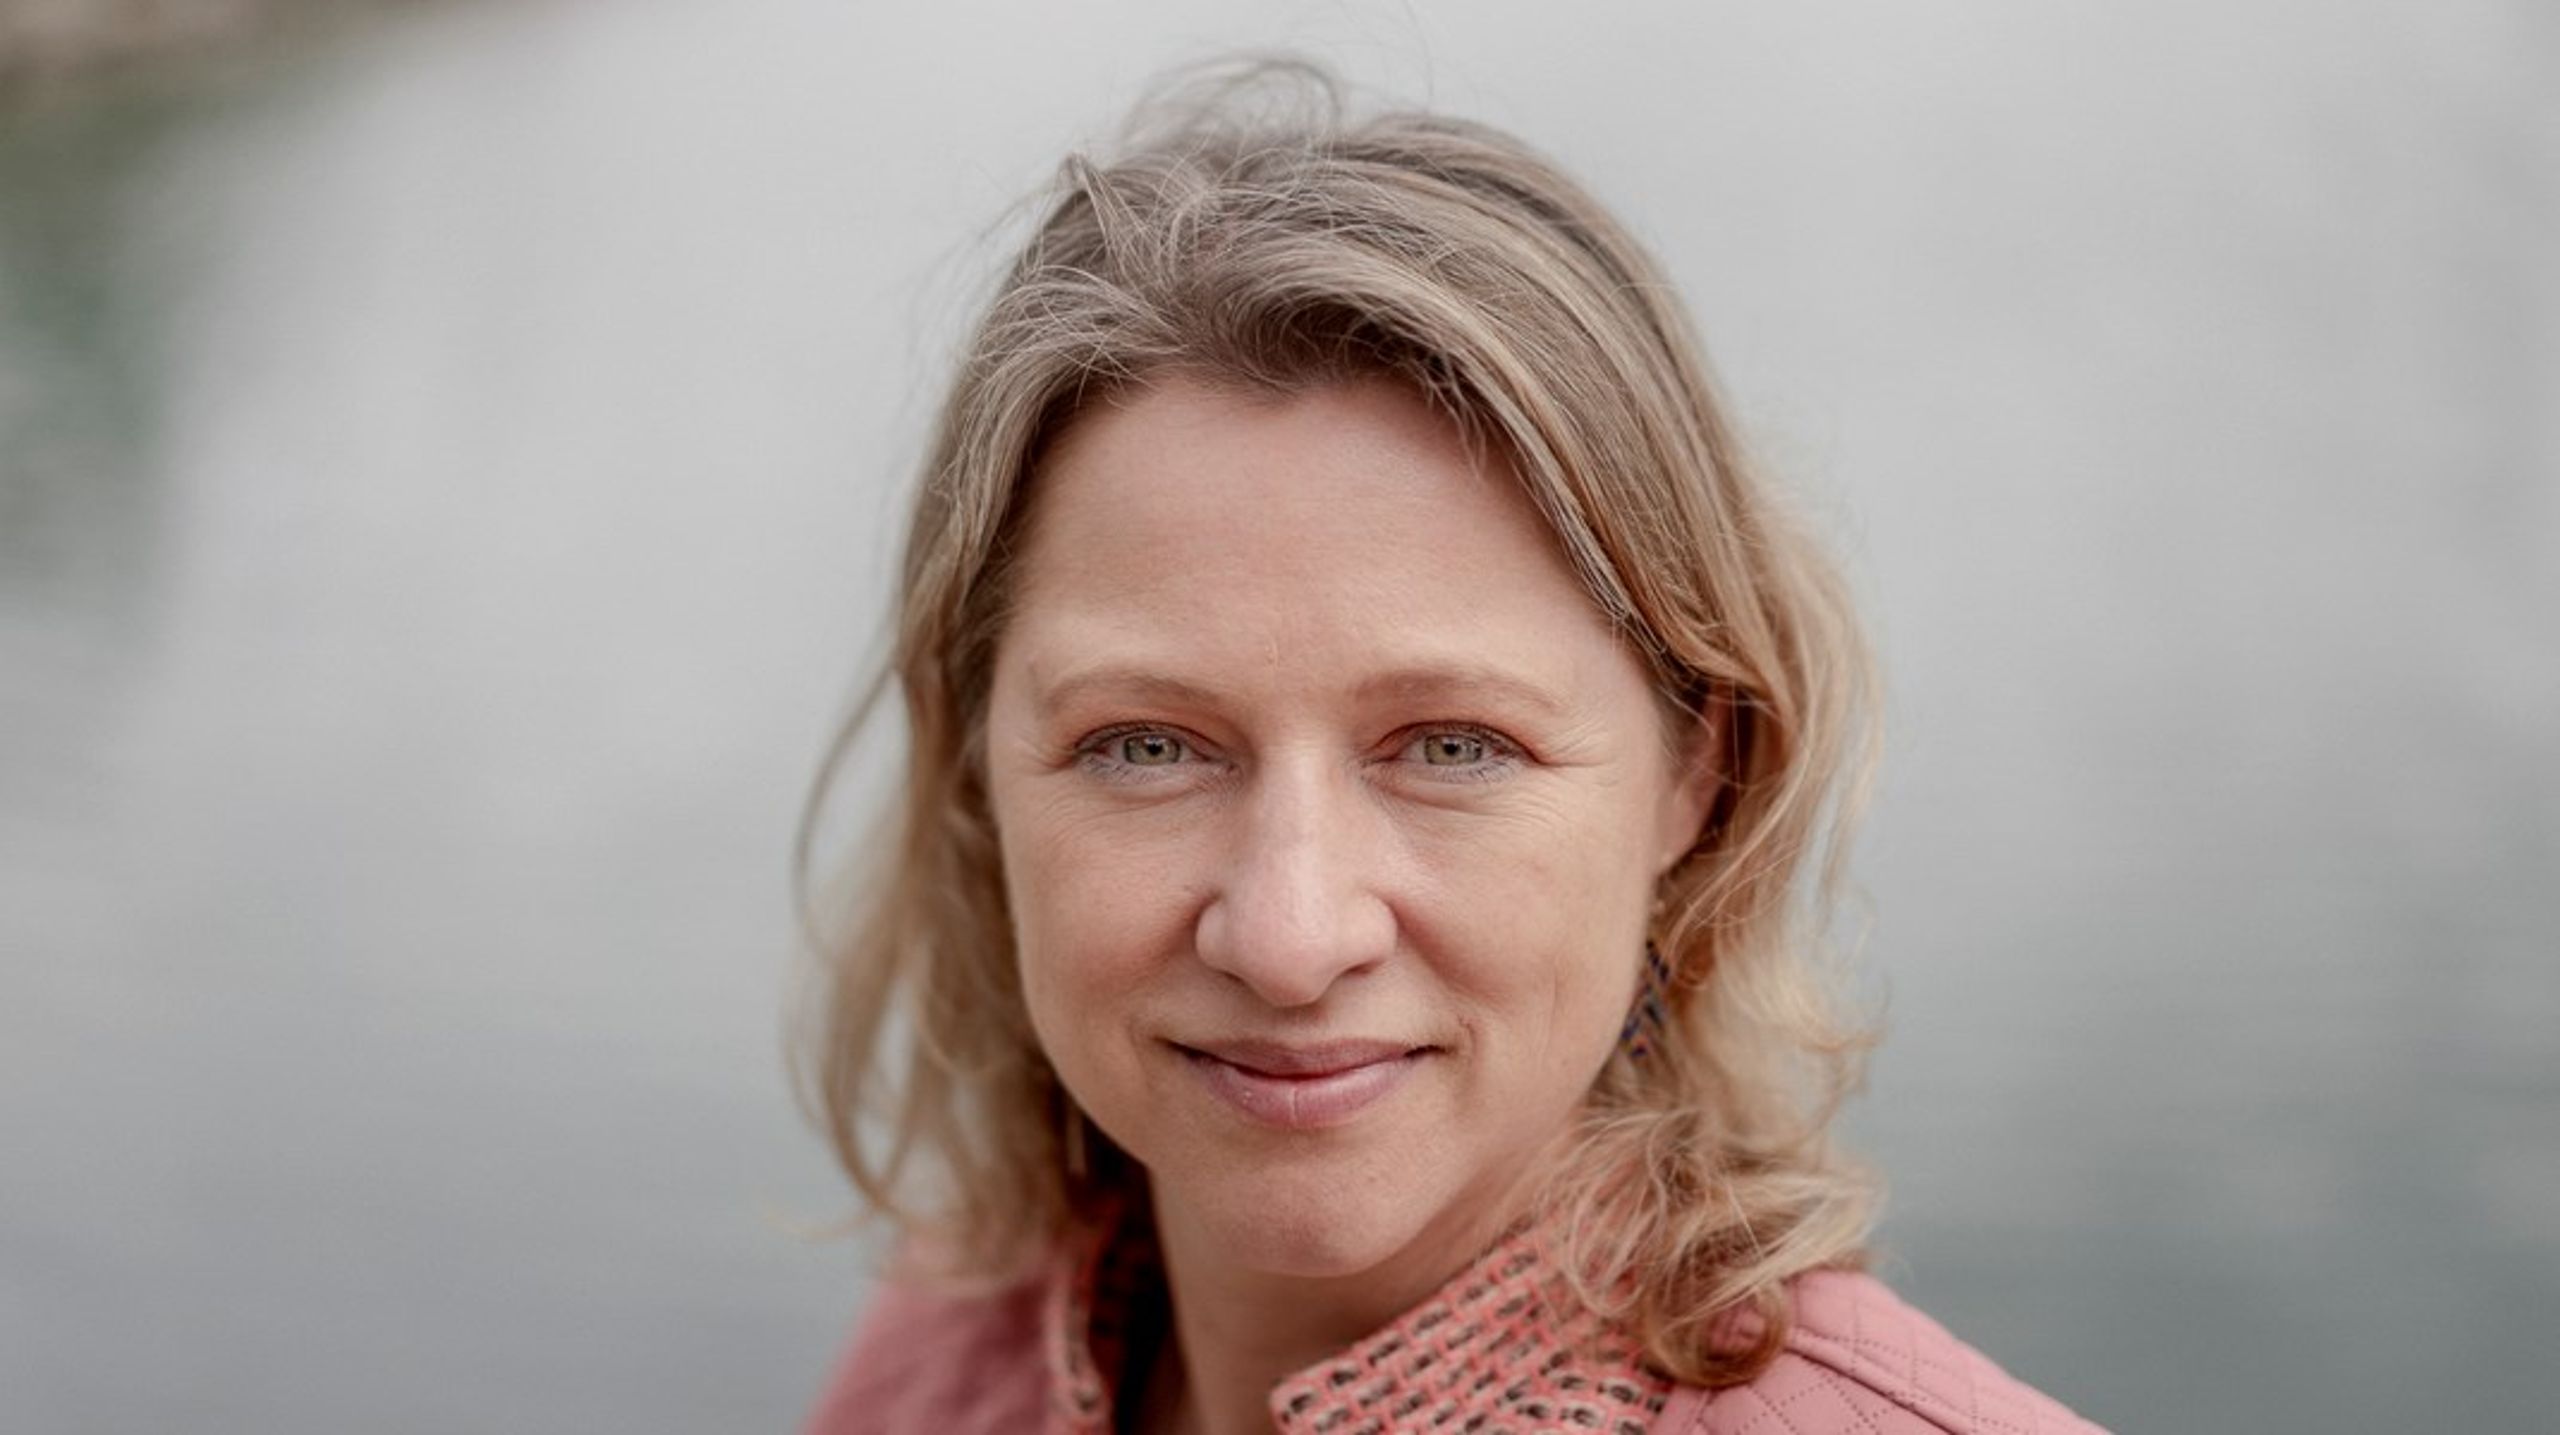 Sophie Hæstorp Andersen får kritik for at skabe en "apatisk" stemning i den socialdemokratiske gruppe på Københavns Rådhus. Selv afviser hun kritikken.&nbsp;